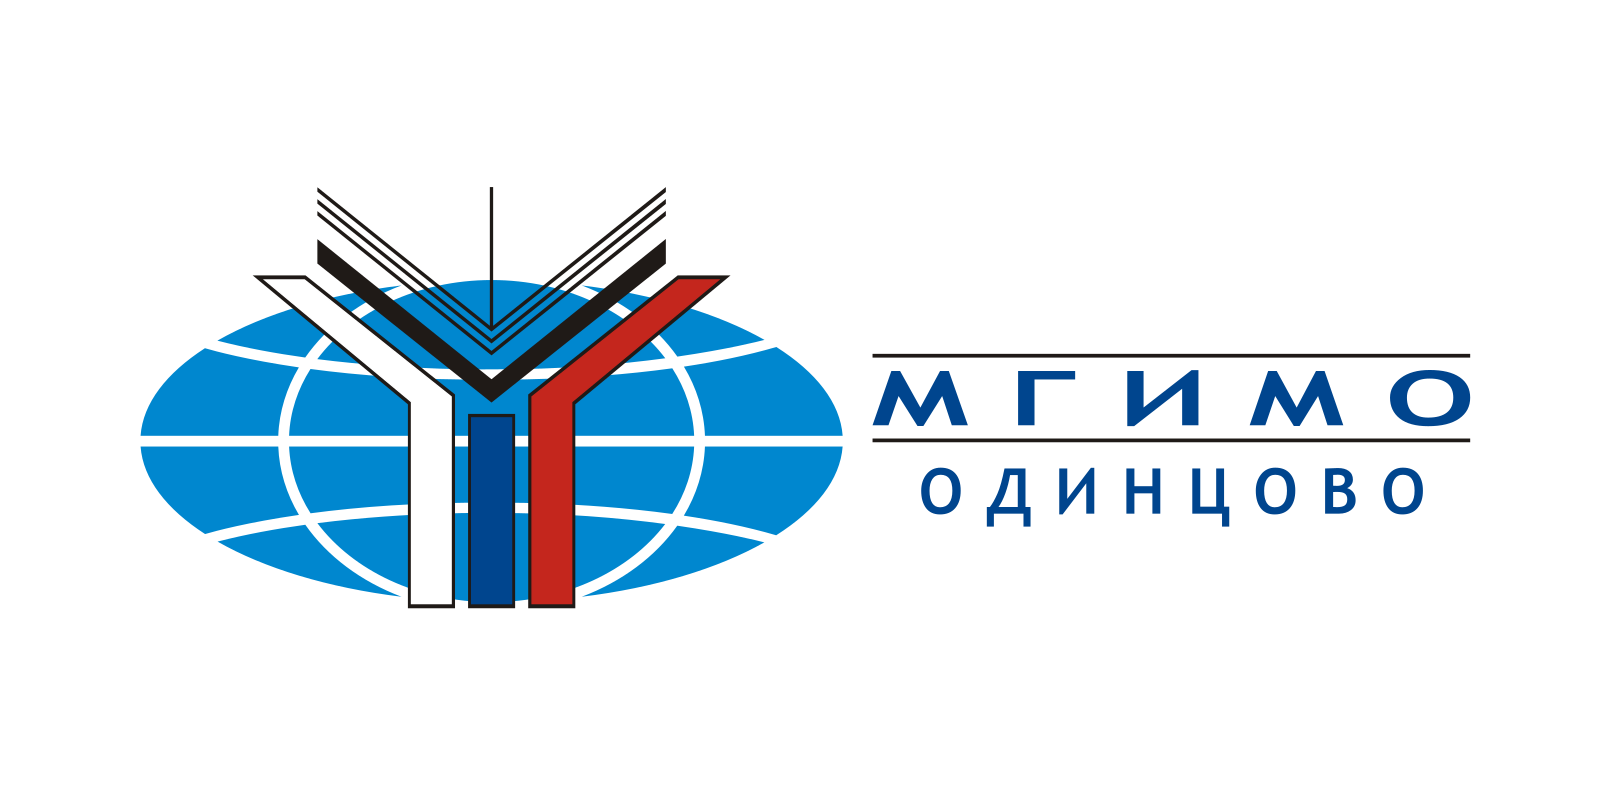 Логотип МГИМО Одинцово – C надписью МГИМО Одинцово - горизонтальный